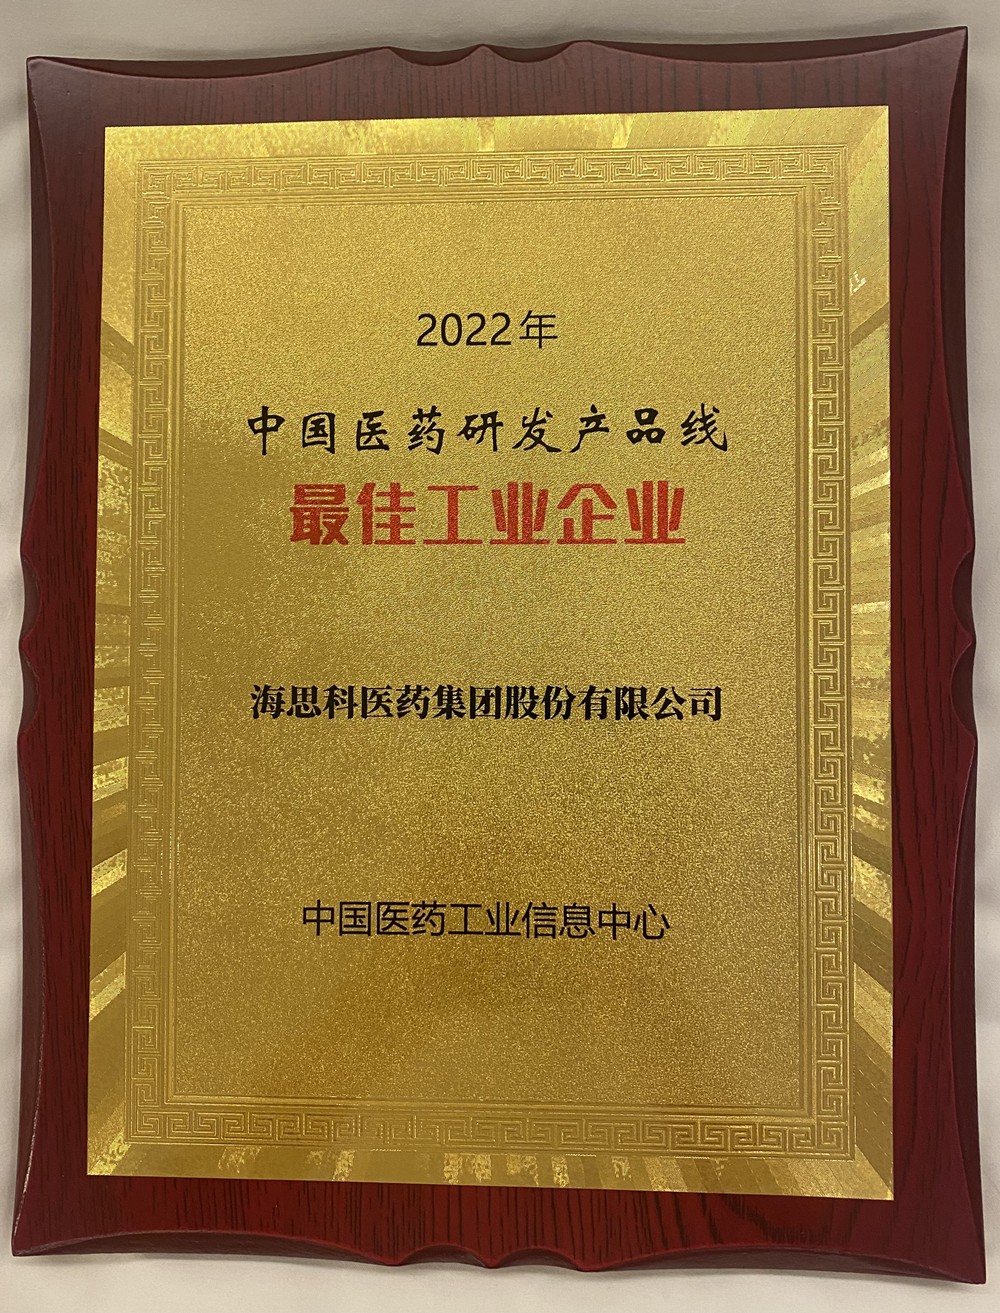 海思科荣获中国医药研发金沙国际总站线最佳工业企业